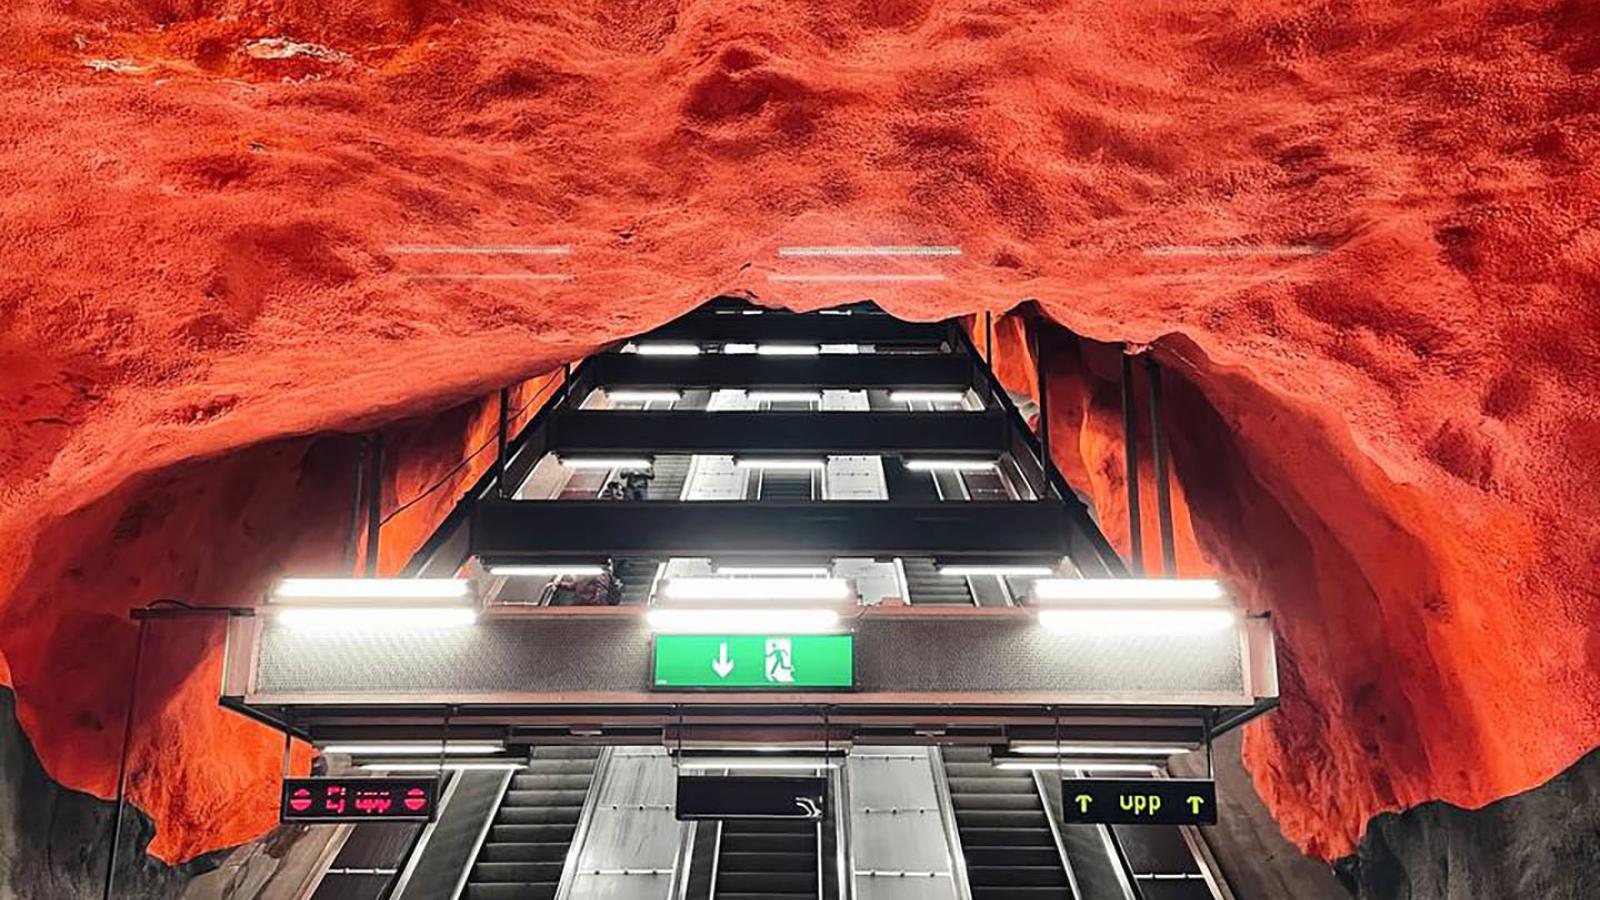 Drei U-Bahn-Rolltreppen führen weit nach oben. Die Rolltreppen sind von einer roten Masse umgeben die wie Kunststoff oder Stein aussieht.